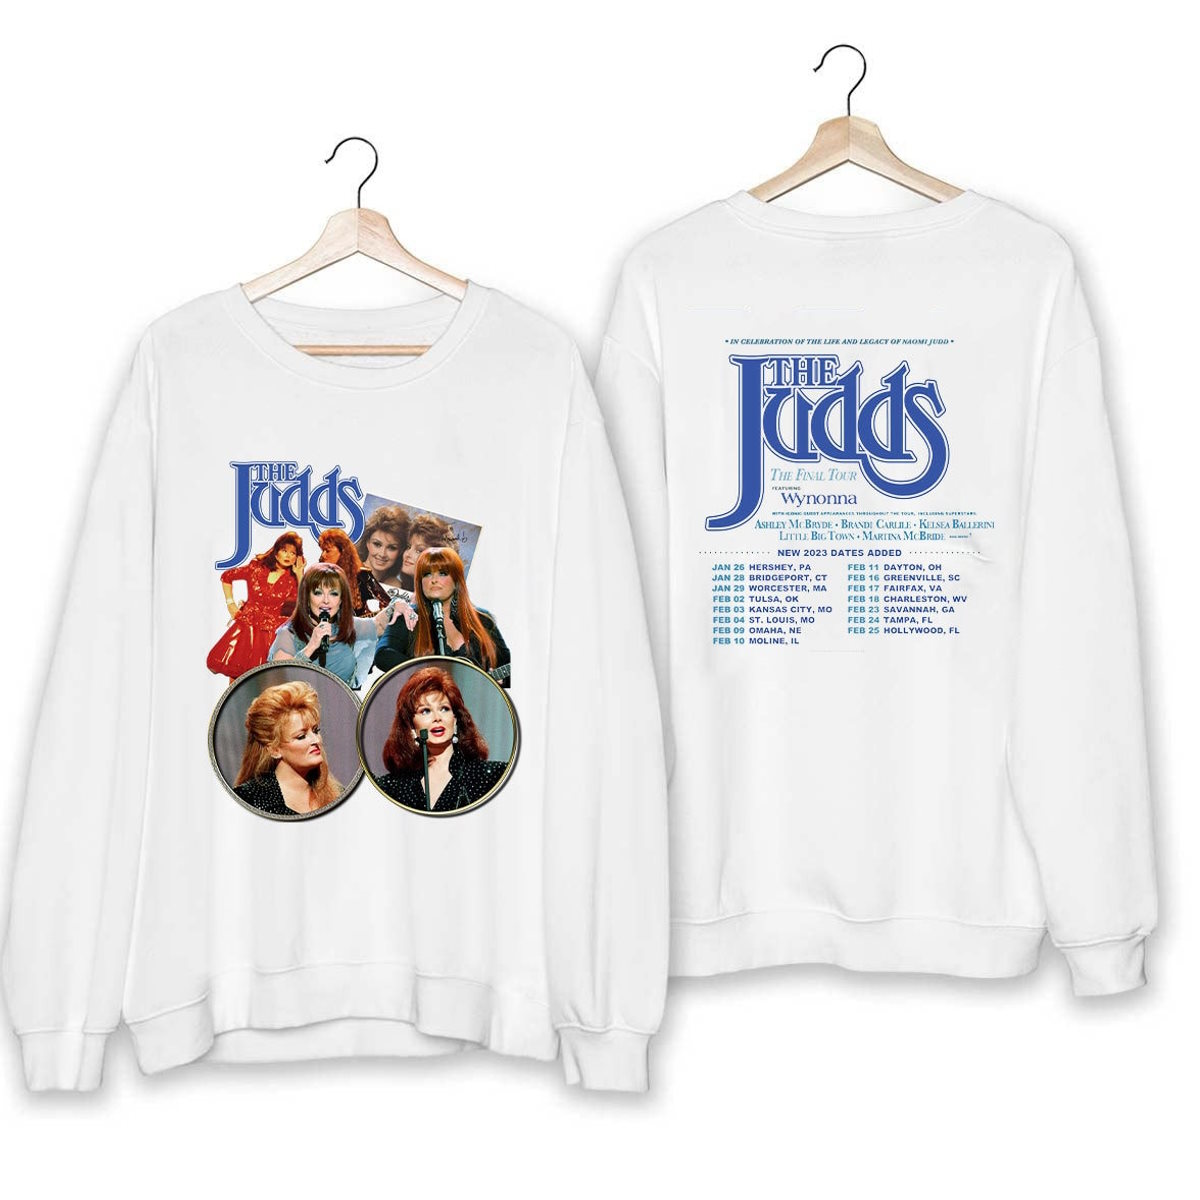 the judds final tour merchandise